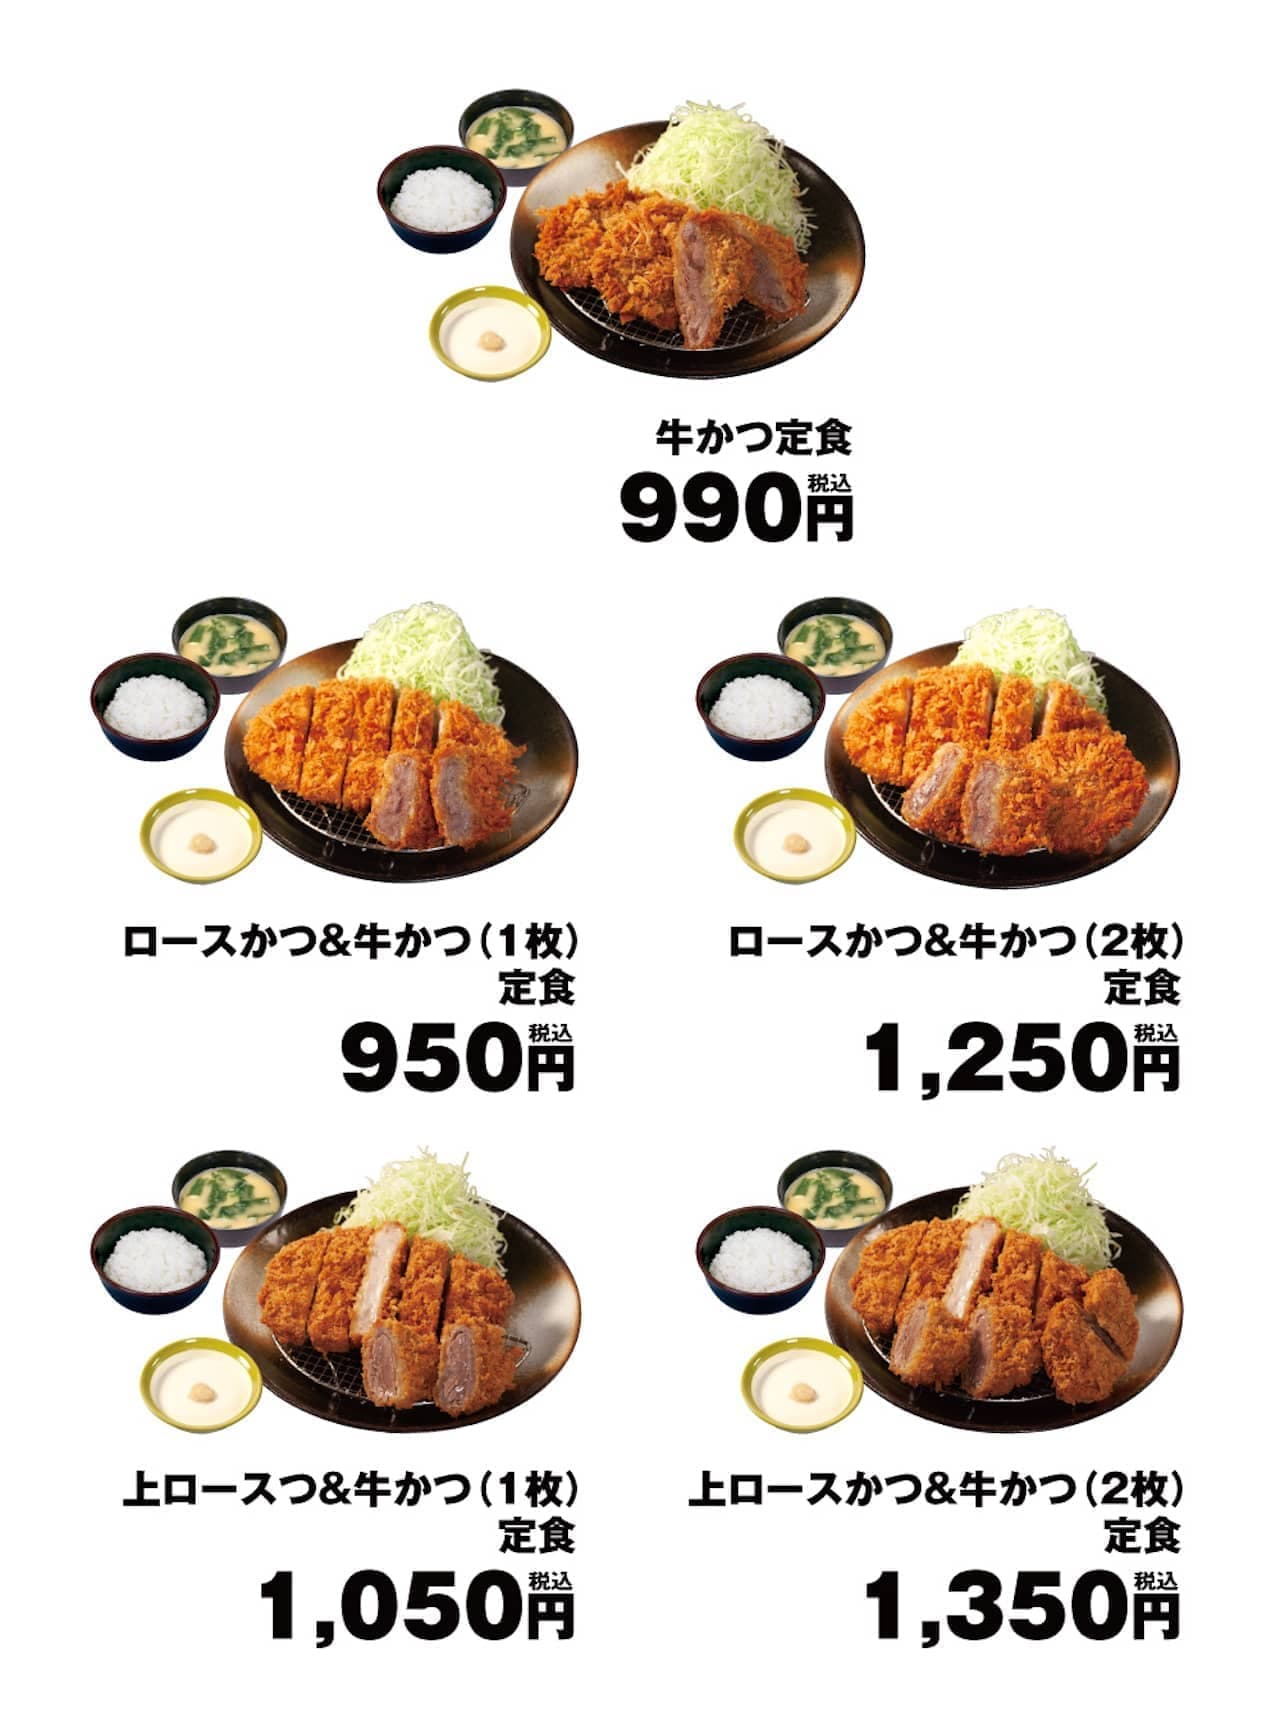 Matsunoya "Beef cutlet